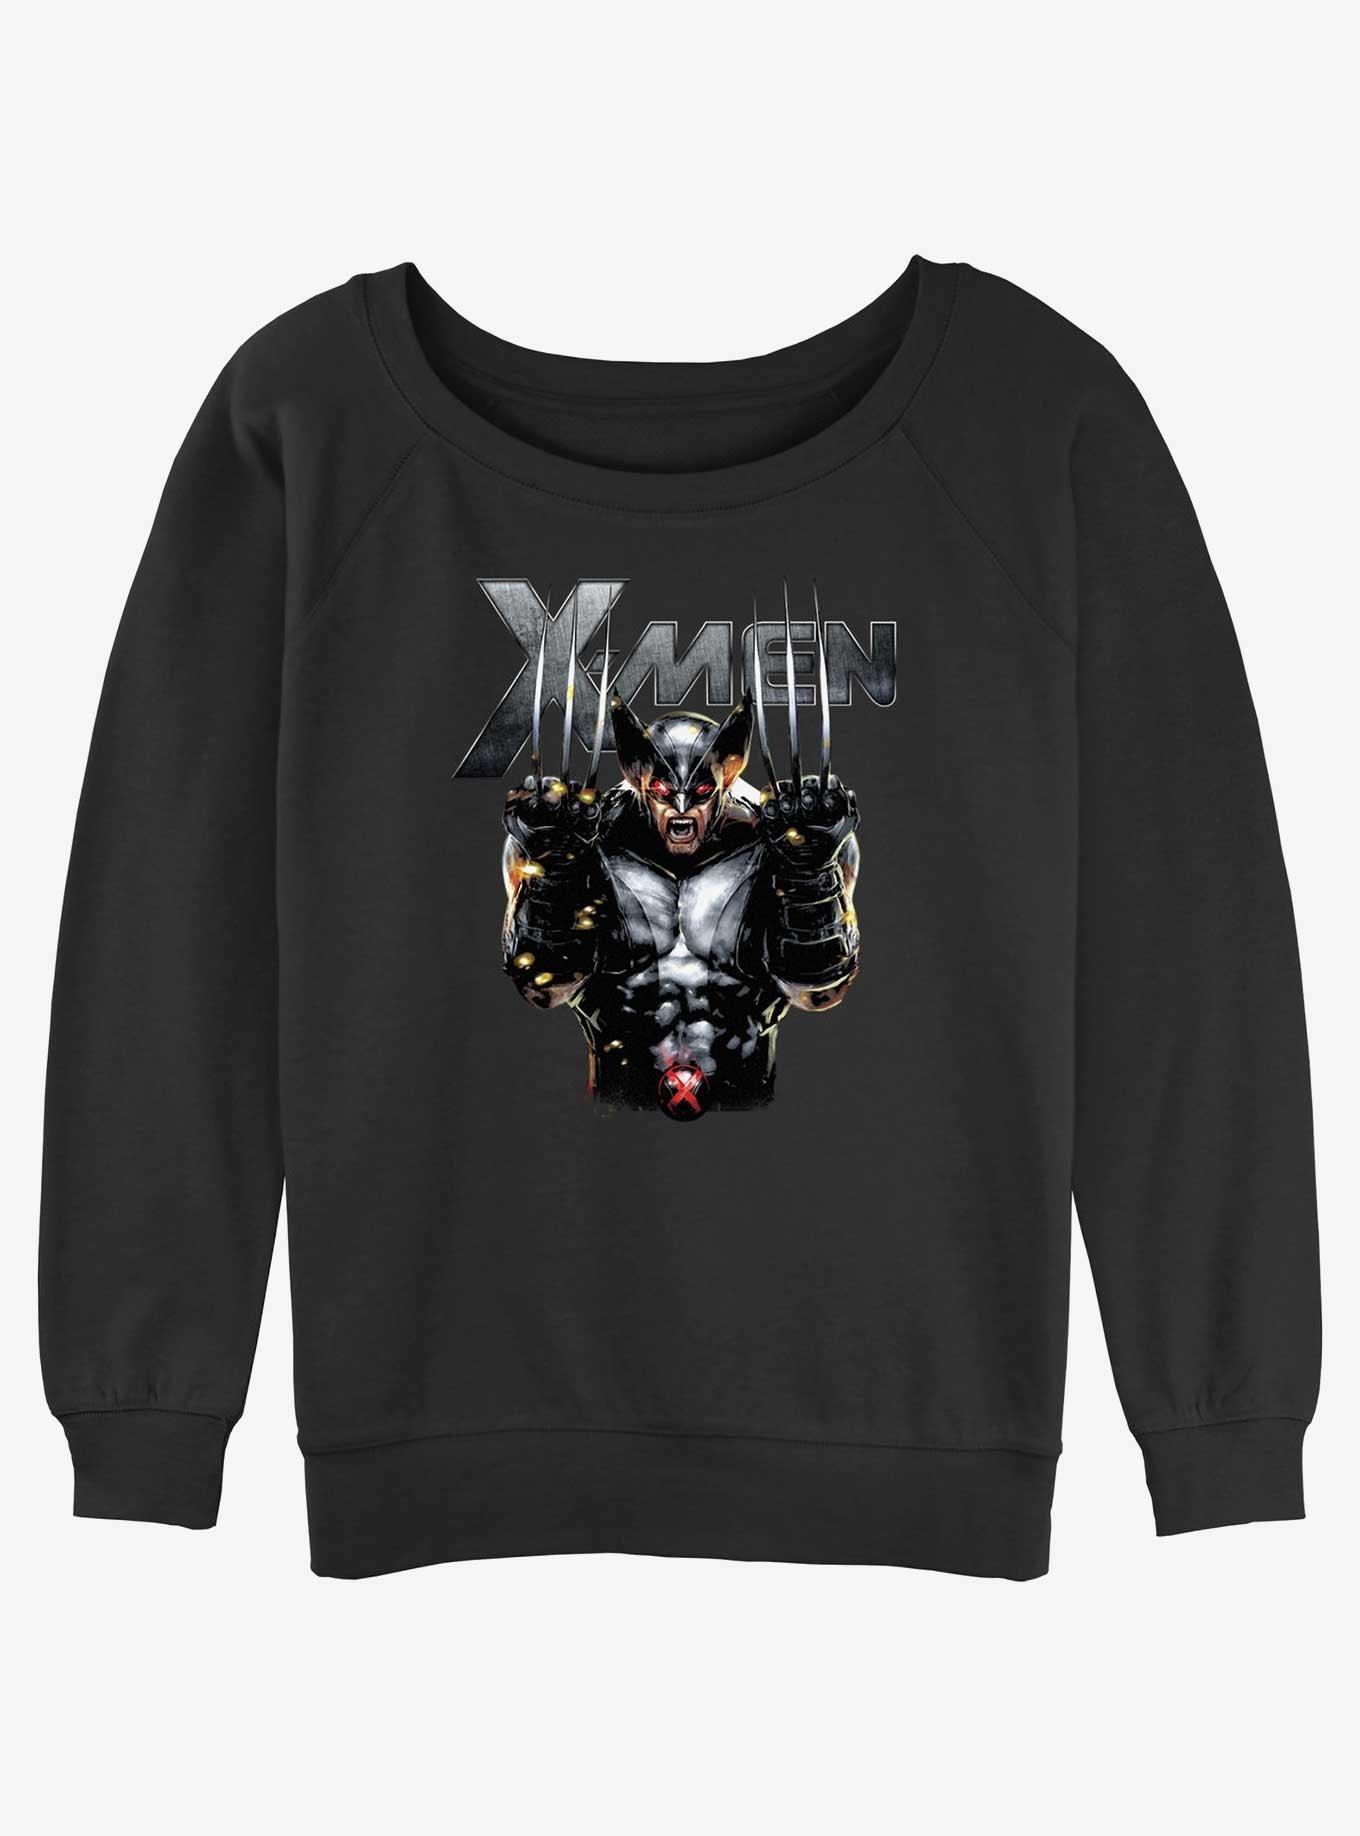 Wolverine Adamantium Rage Girls Slouchy Sweatshirt, BLACK, hi-res